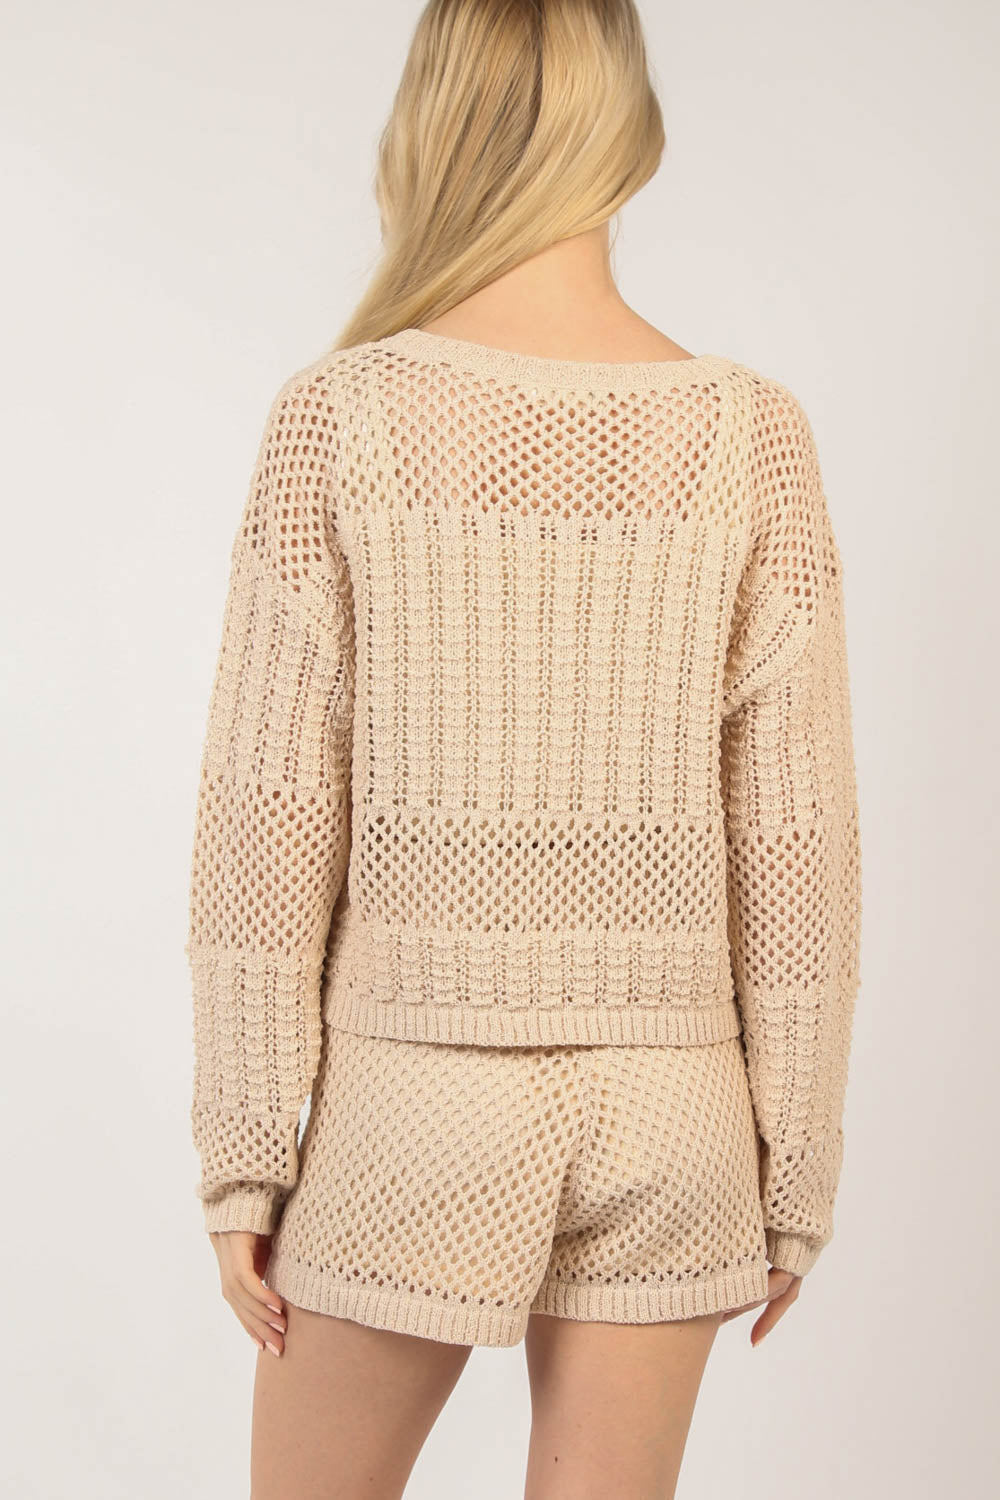 Crochet Lightweight Sweater and Short SET